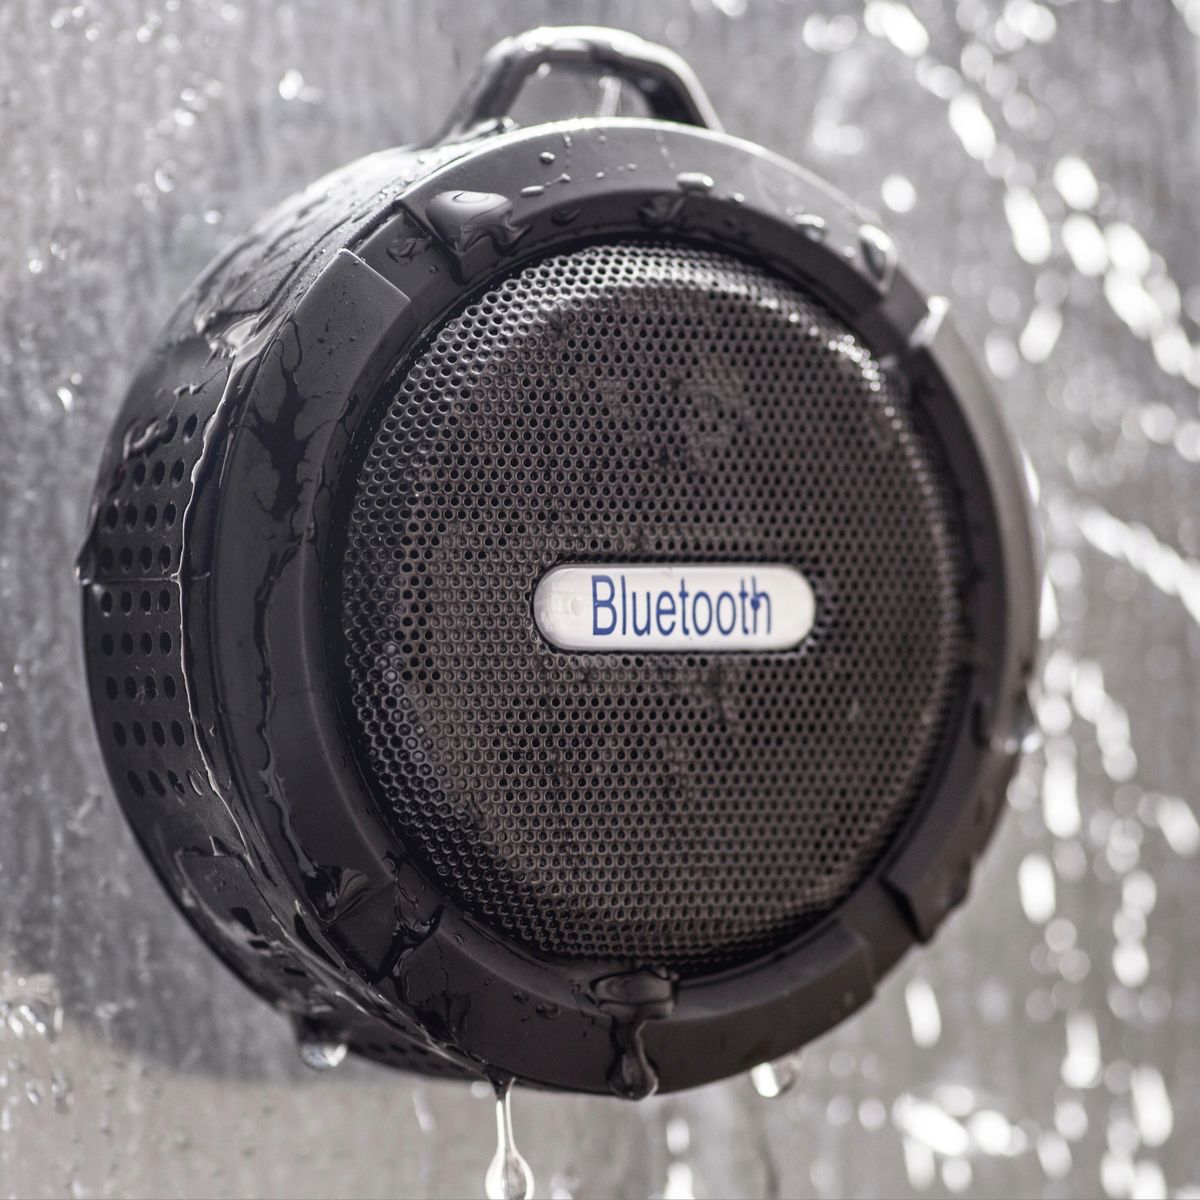  Altavoz Bluetooth portátil inalámbrico V5.3 - Pequeño altavoz  de ducha impermeable con volumen más fuerte y graves potentes - Luces  lindas y tiempo de reproducción de 10 horas - Ligero con